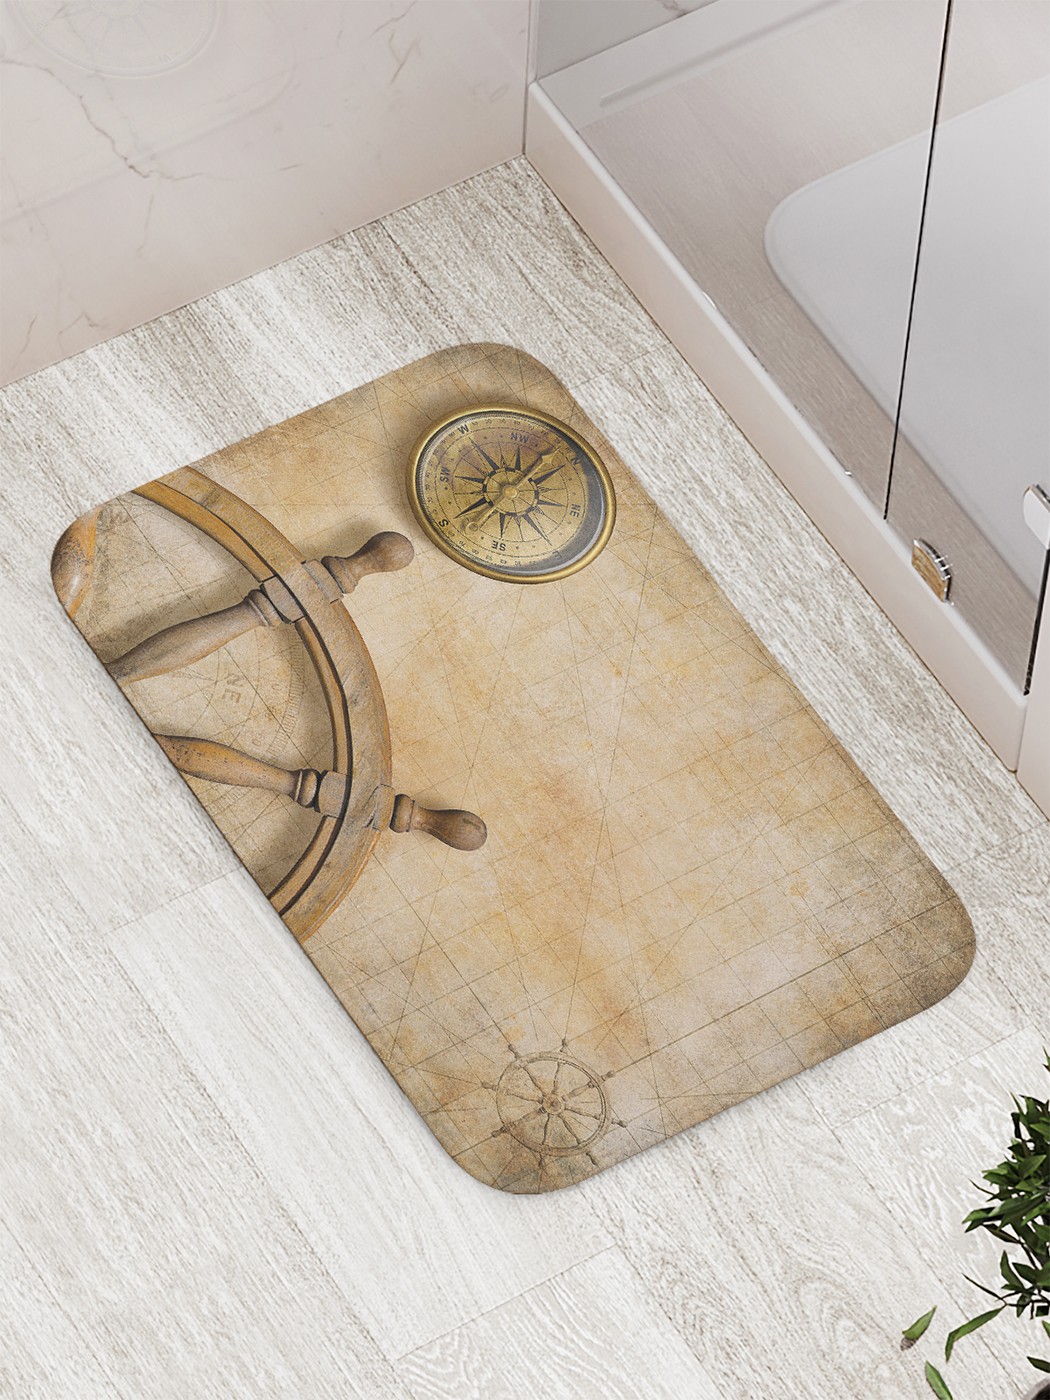 фото Коврик противоскользящий joyarty "компас и штурвал" для ванной, сауны, бассейна, 77х52 см